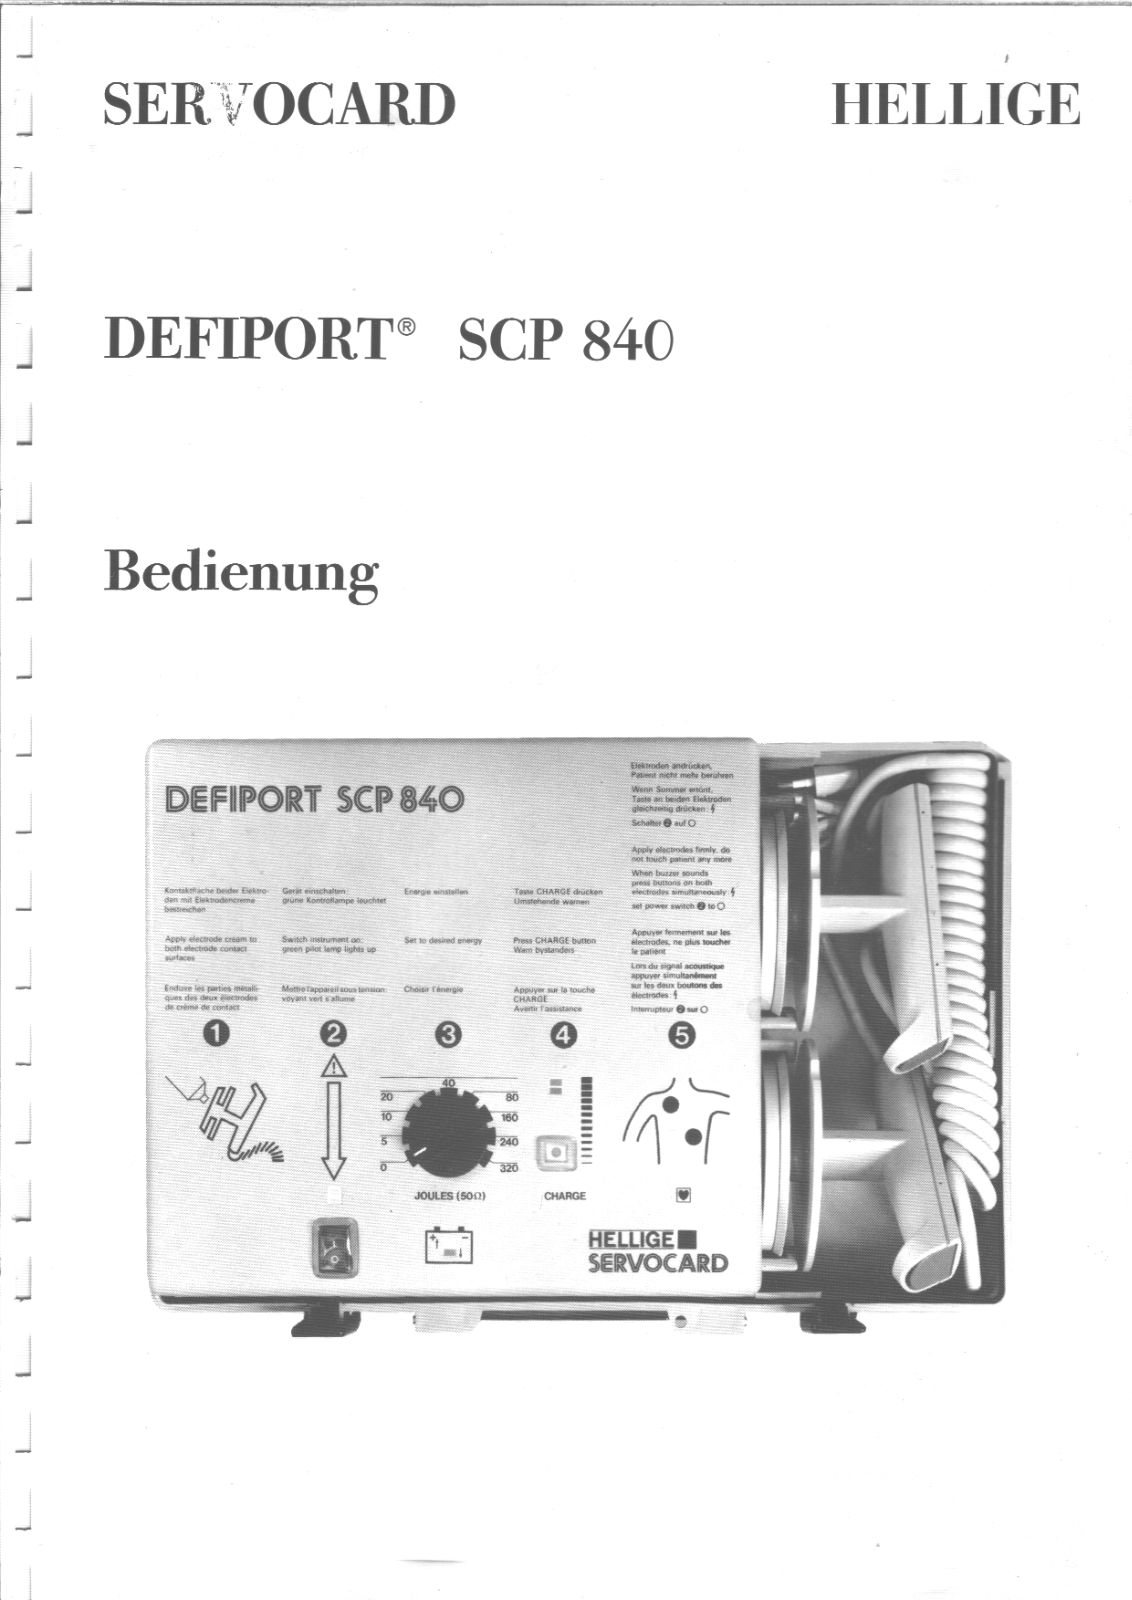 Hellige Servocard Defiport SCP-840 User manual